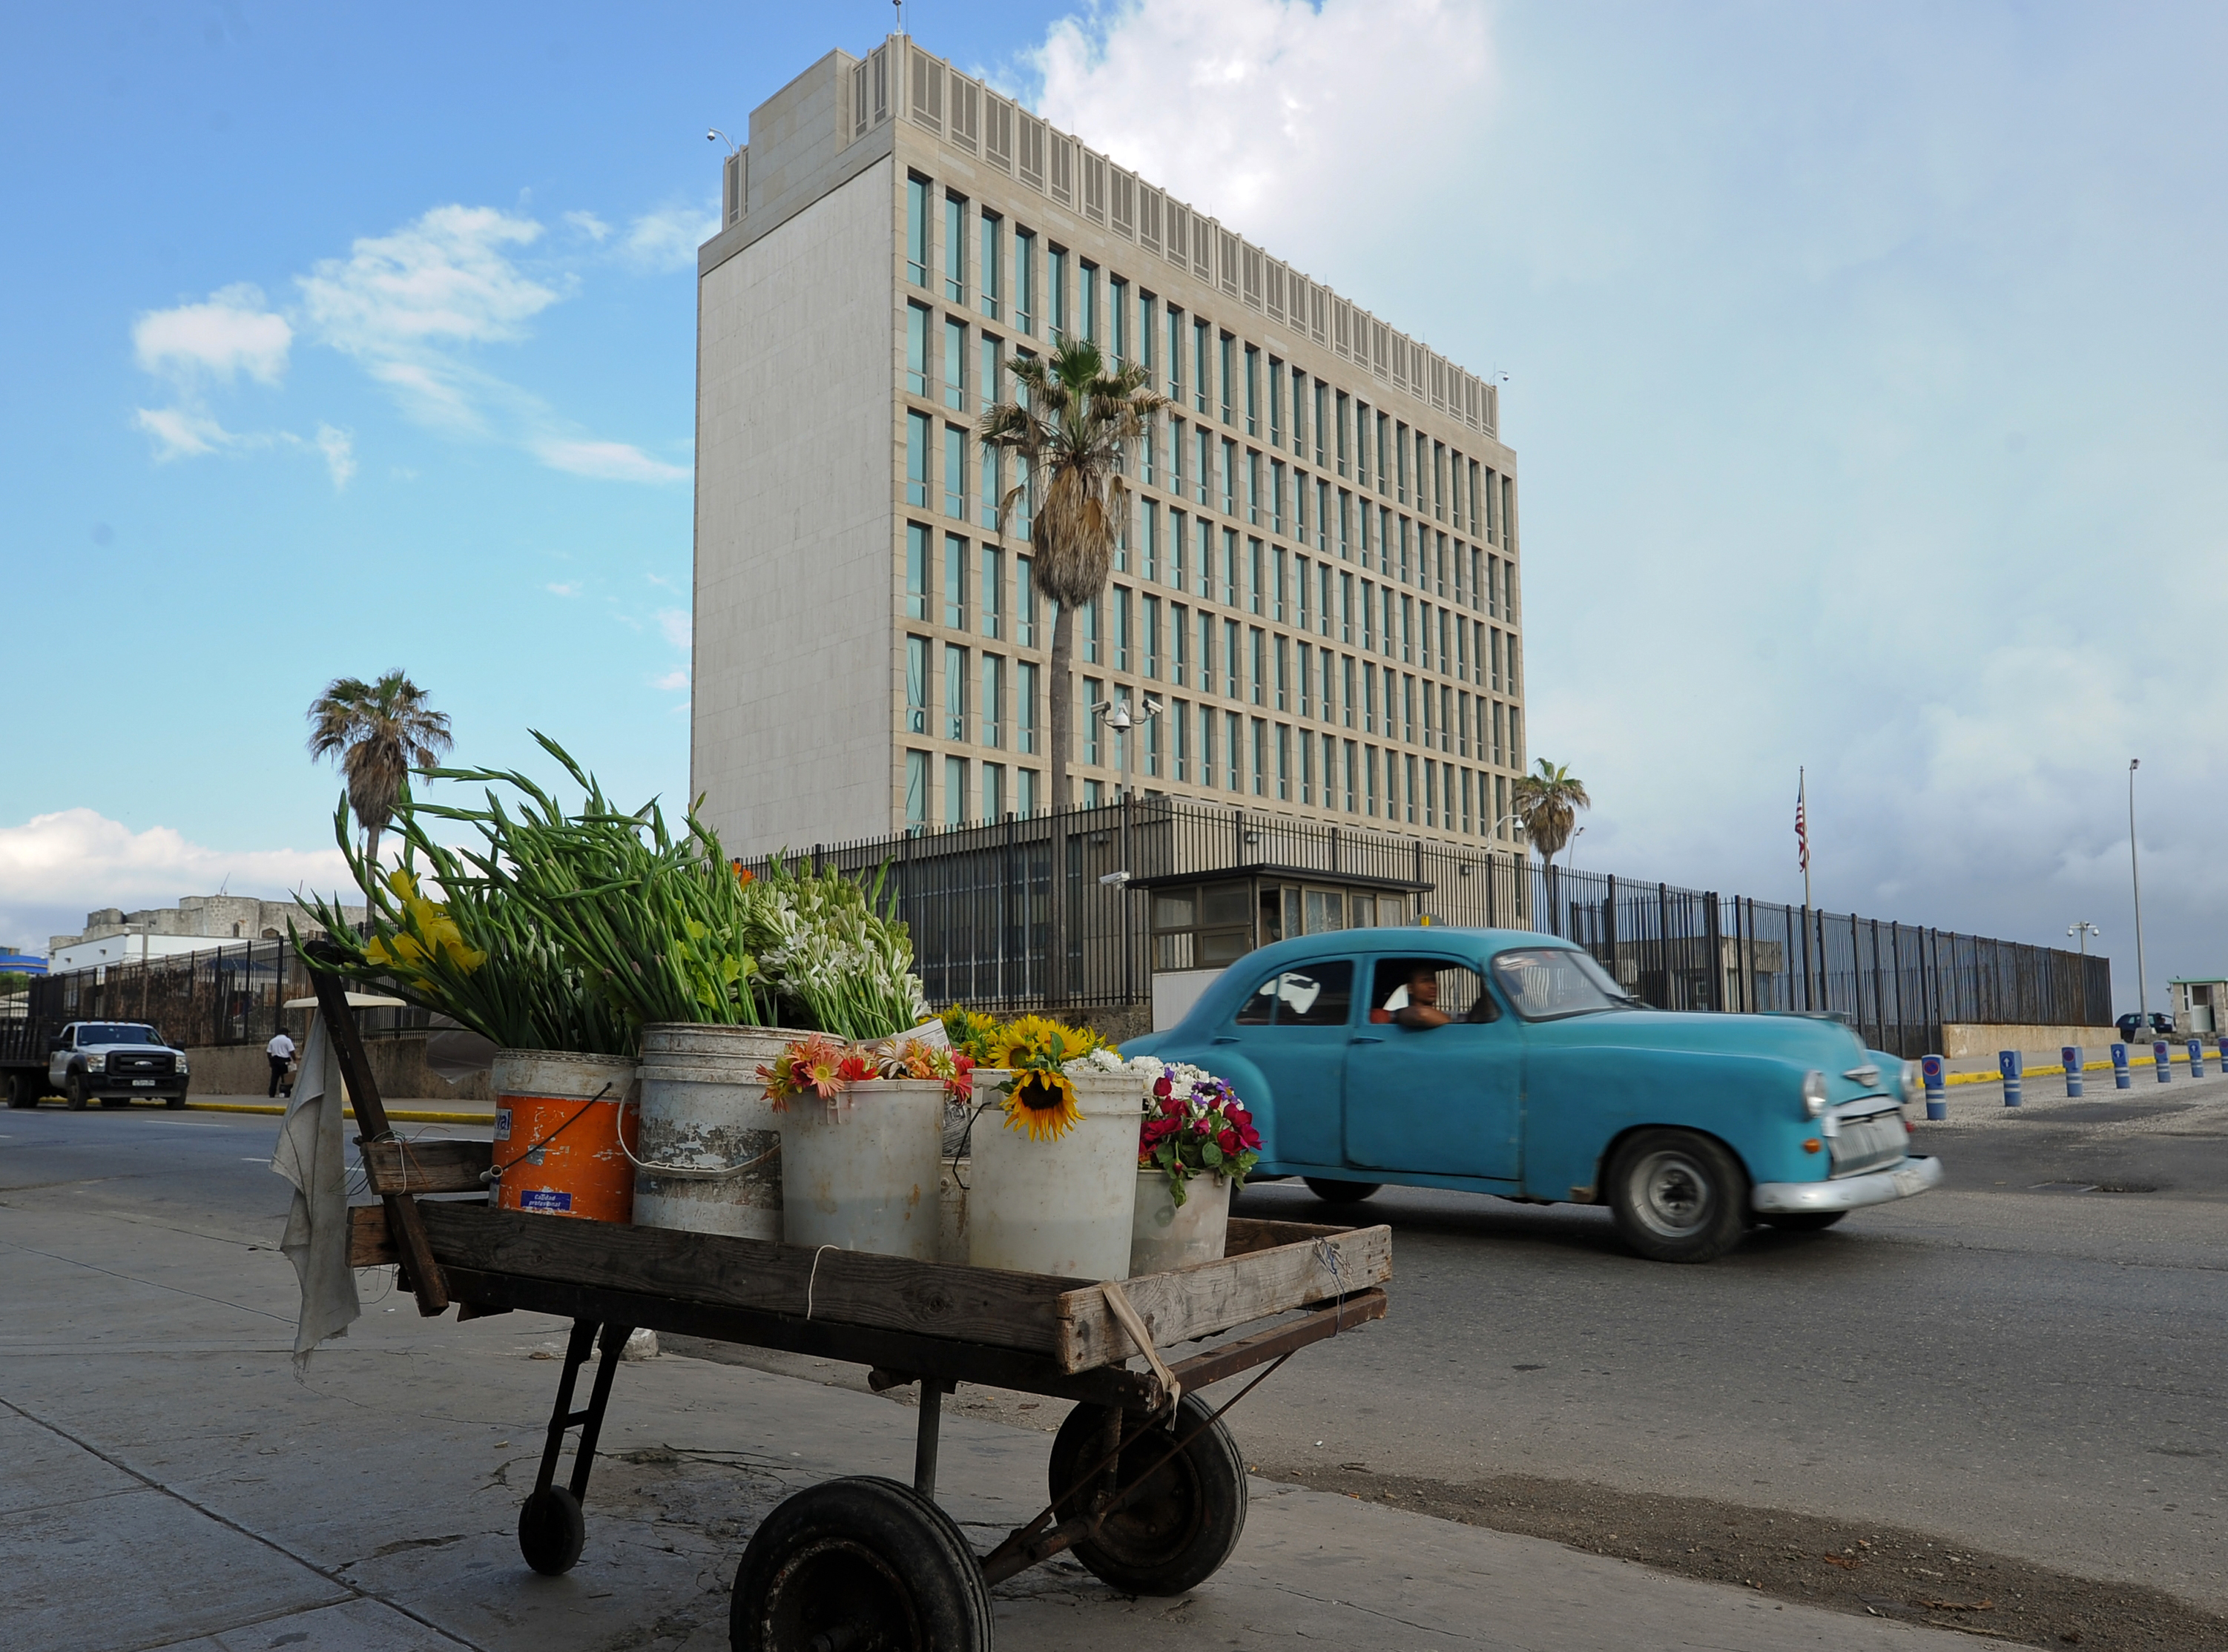 Agyi elváltozást mutattak ki a kubai követségen hangtámadást szenvedett diplomatáknál